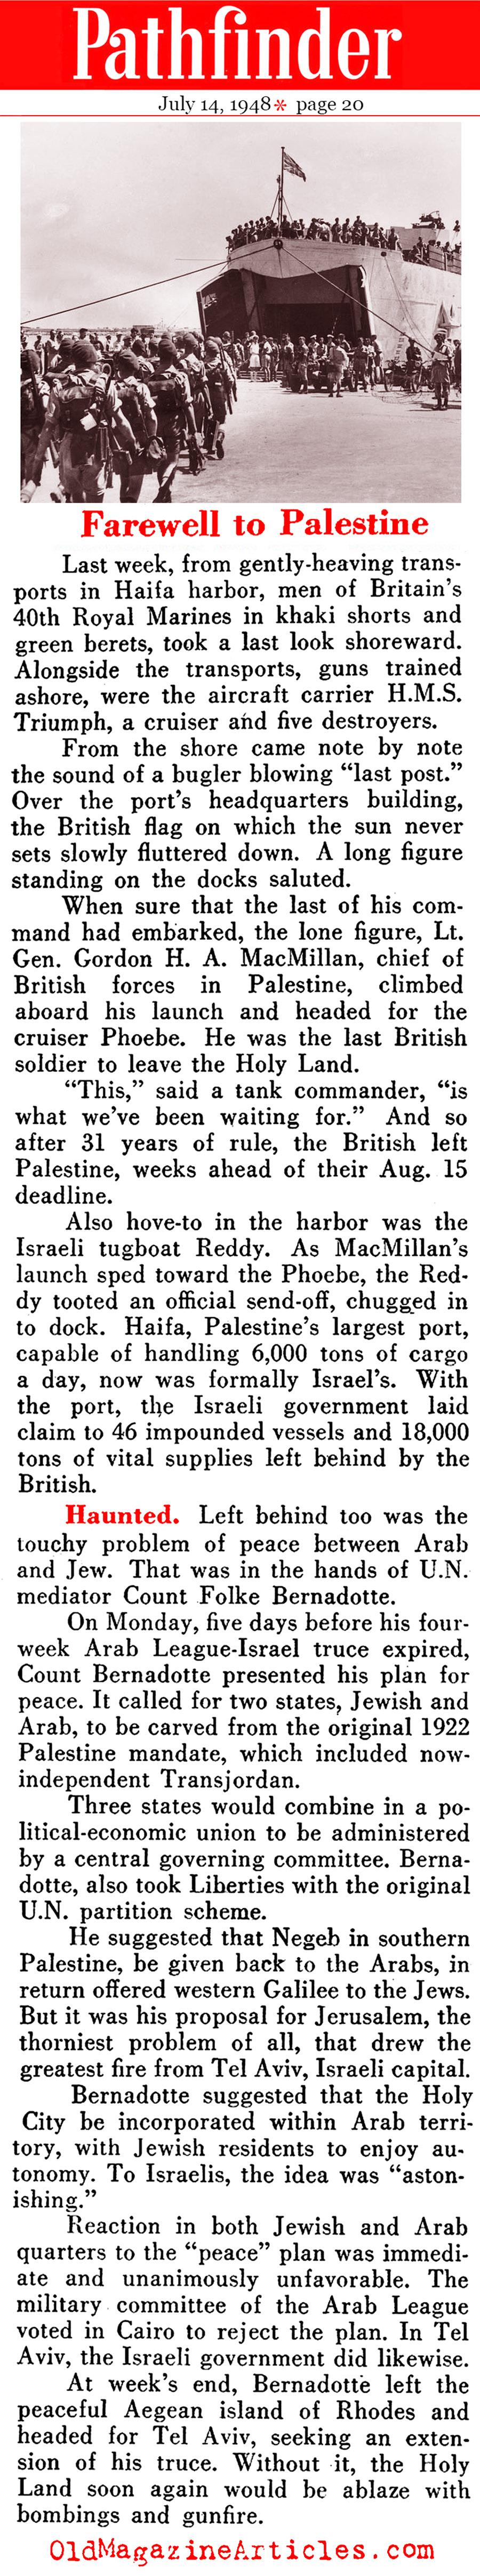 Palestine Brexit (Pathfinder Magazine, 1948)